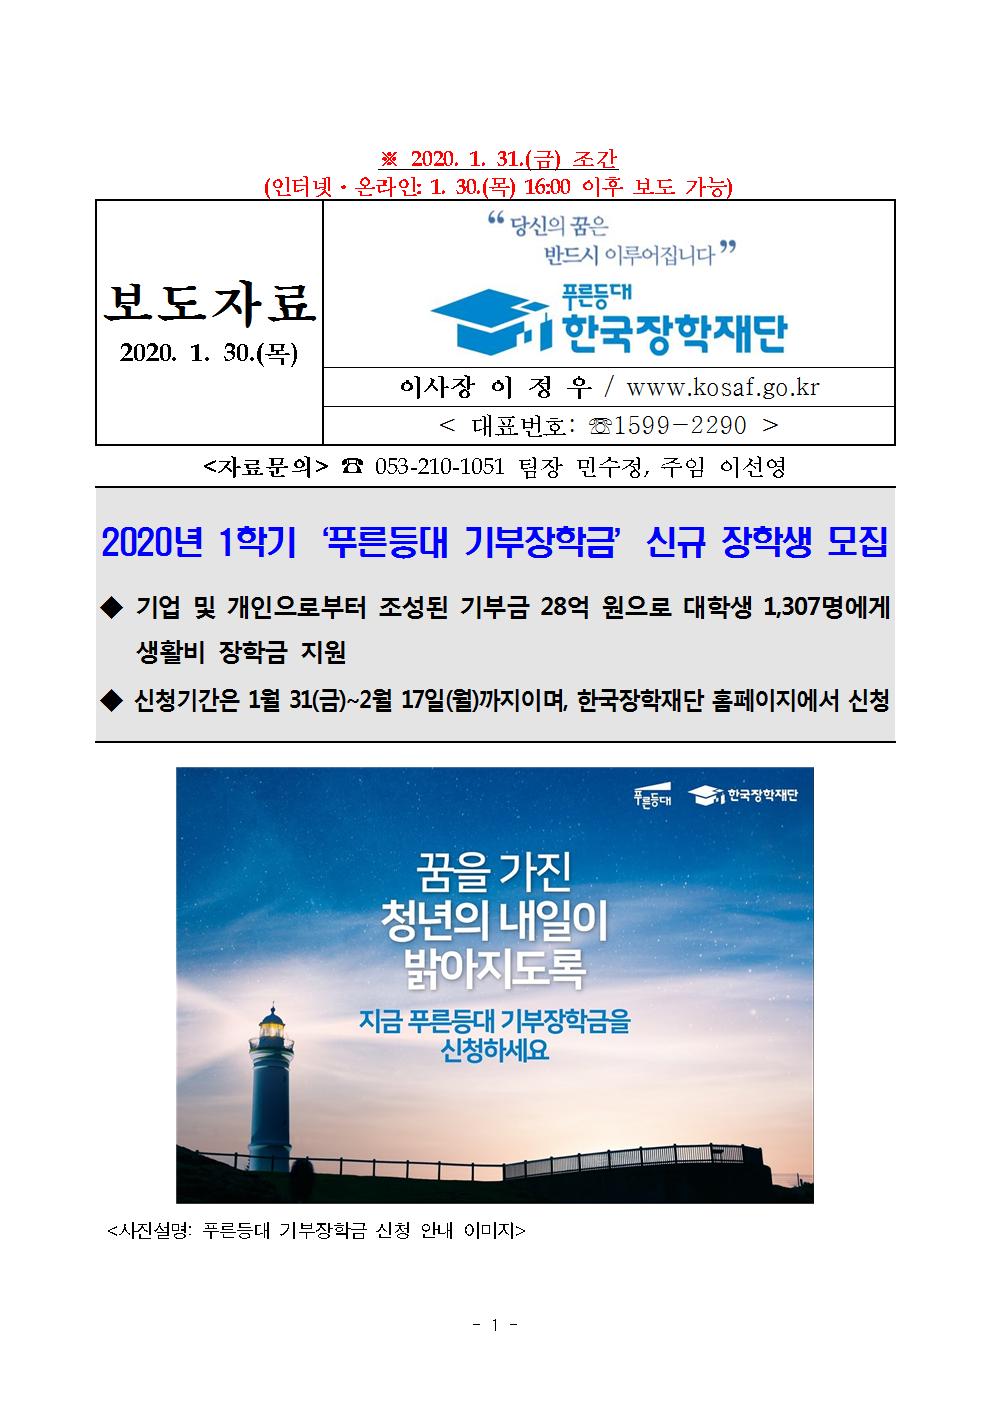 01-30(목)보도자료 한국장학재단 2020년 1학기 푸른등대 기부장학금 신청001.jpg